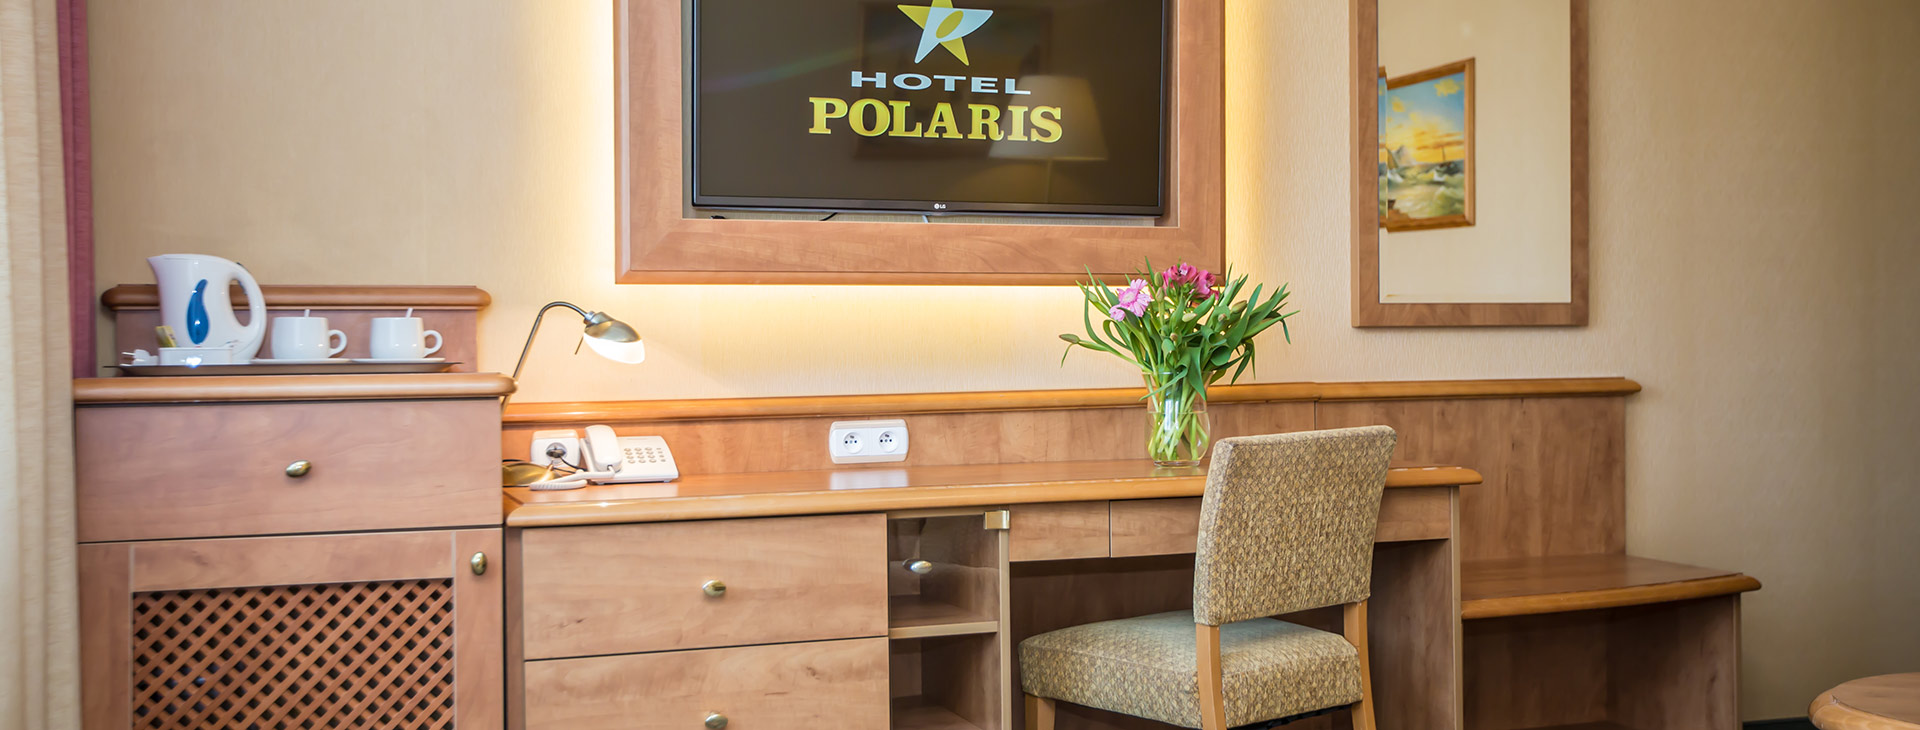 Hotel Polaris Obrázok1